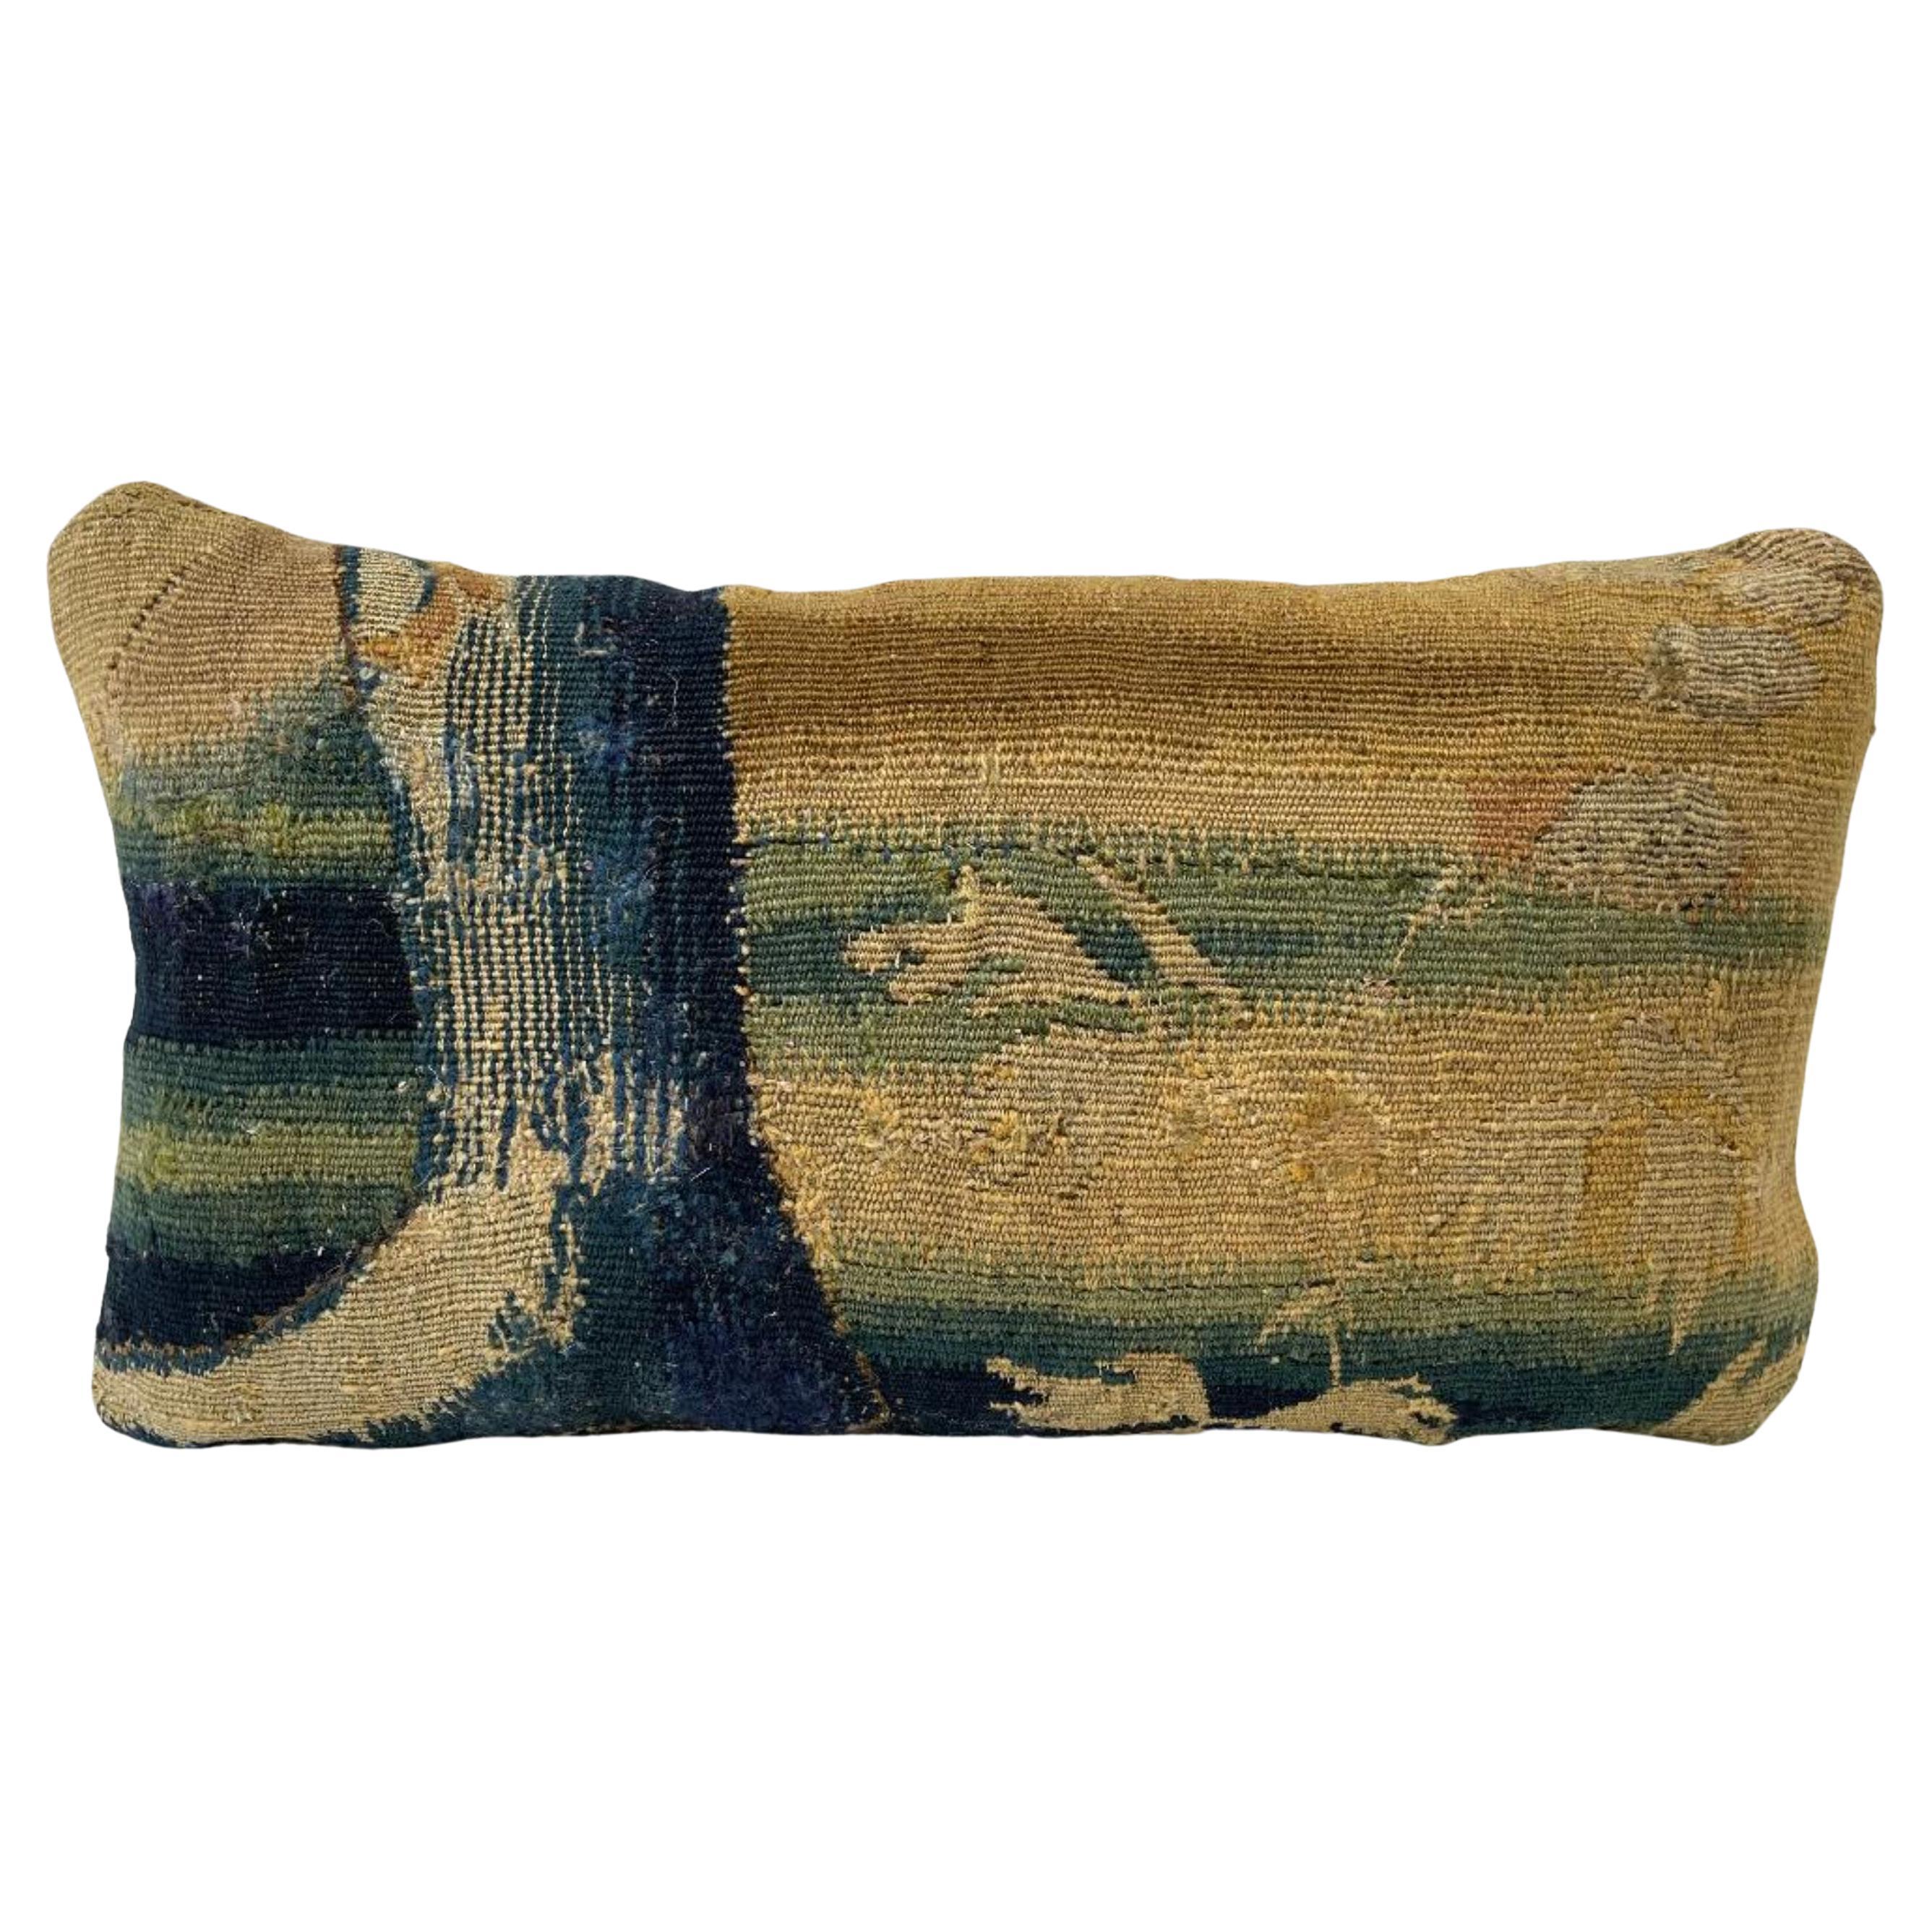 Taie d'oreiller réalisée à partir d'une tapisserie Flemish du XVIe siècle